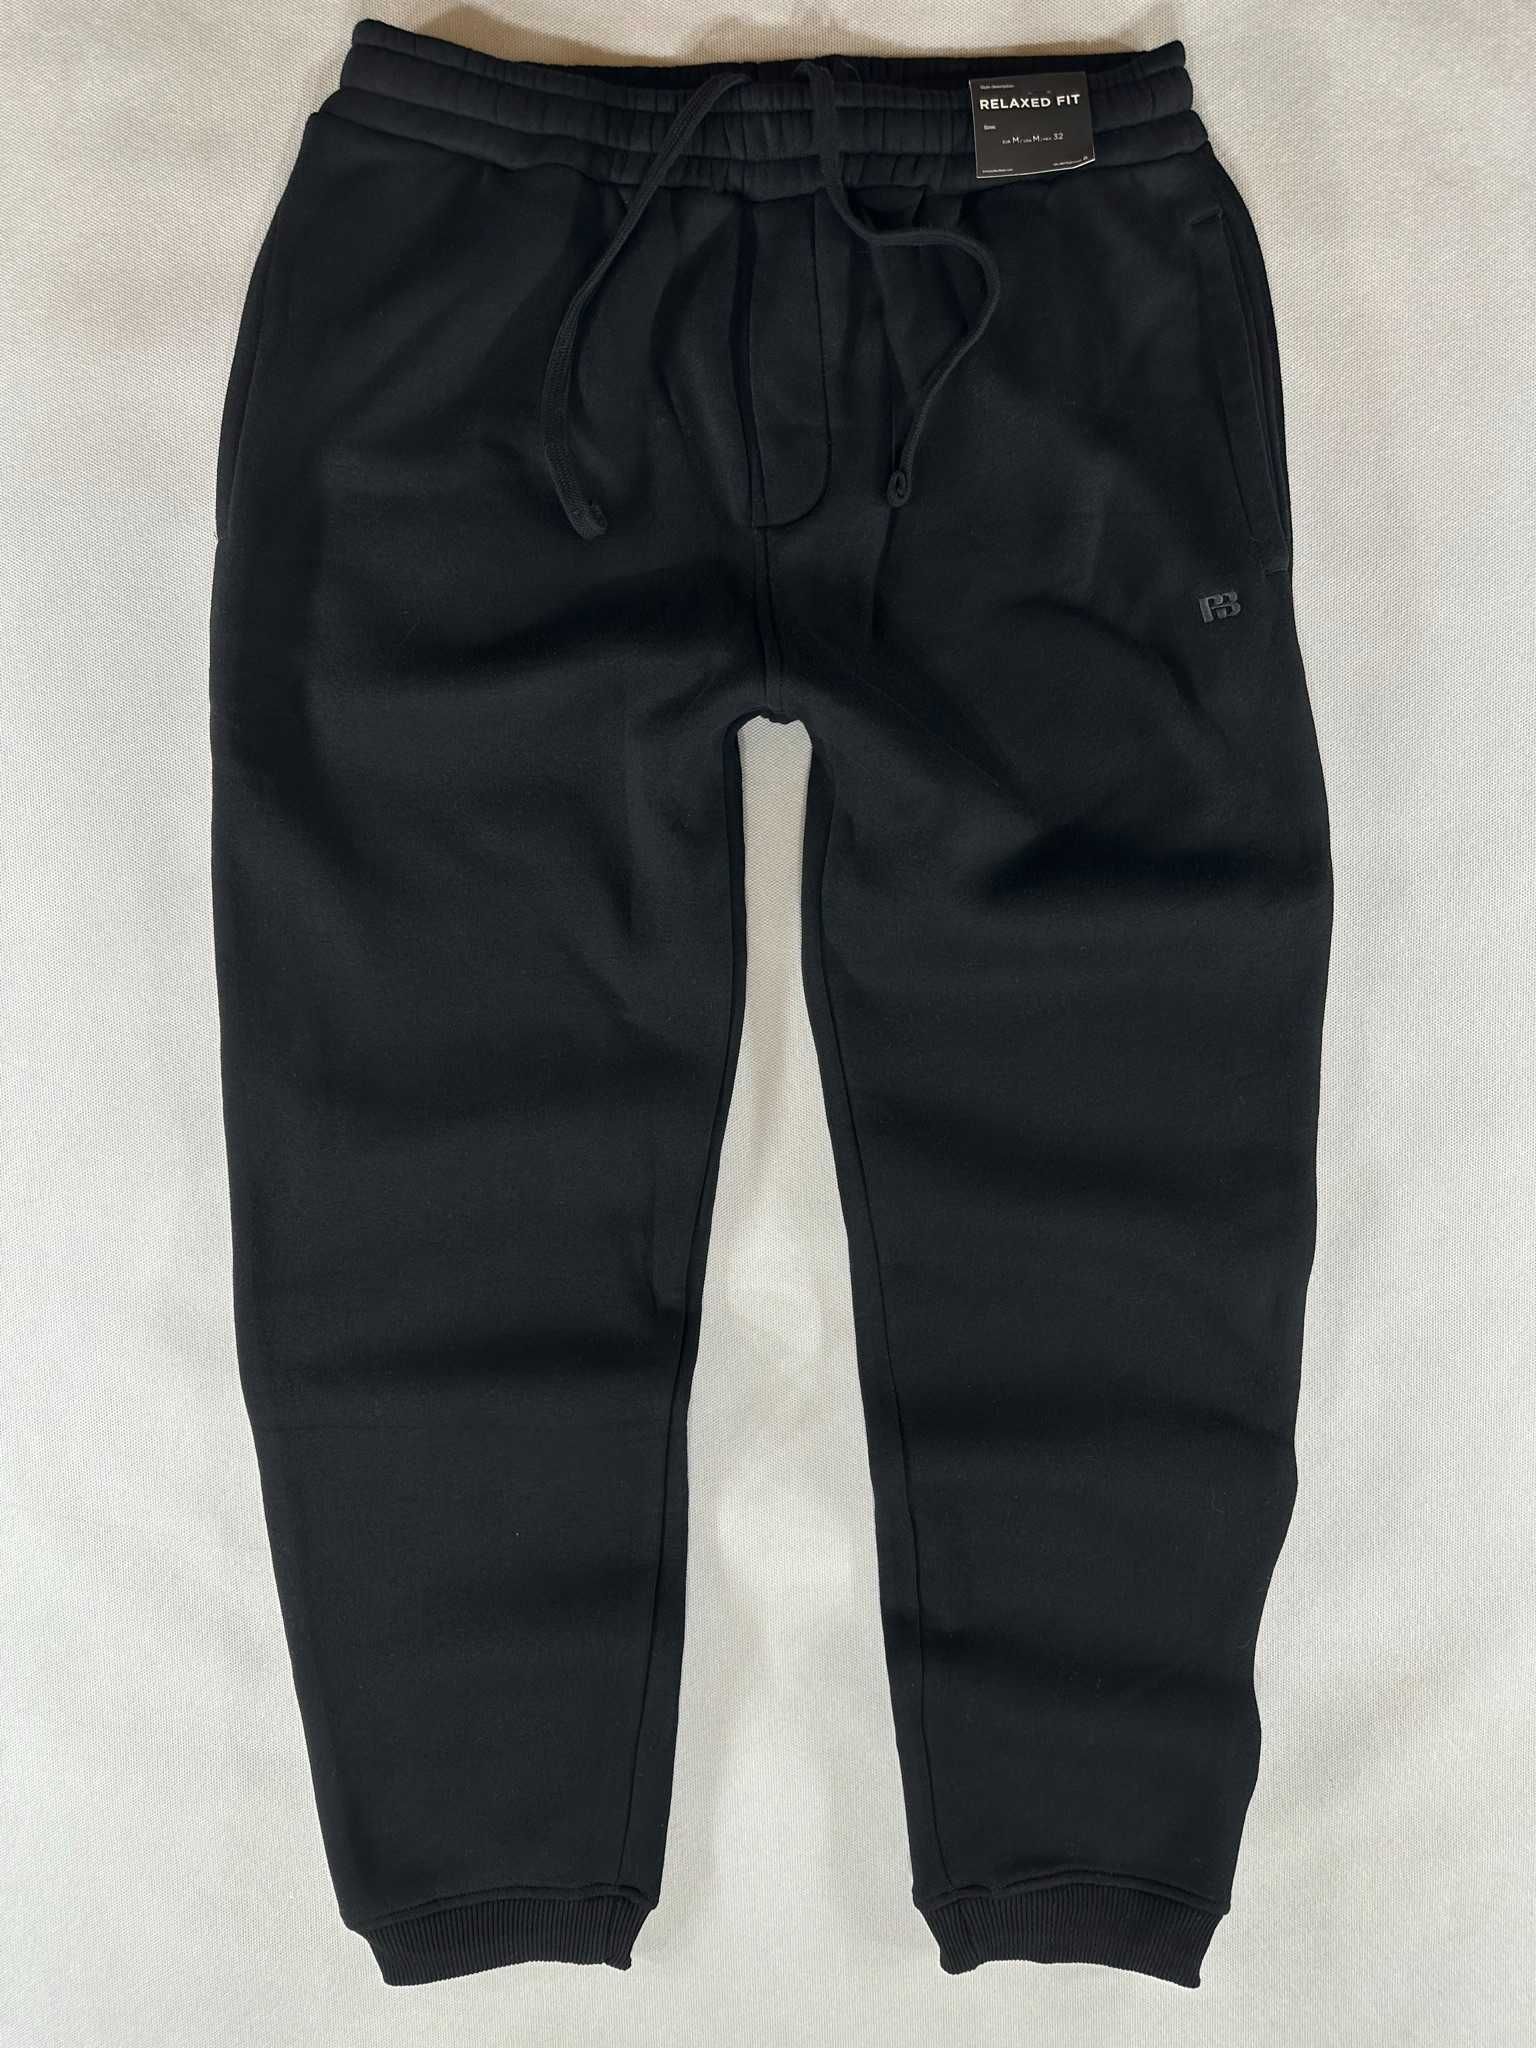 PULL & BEAR spodnie dresowe czarne męskie L